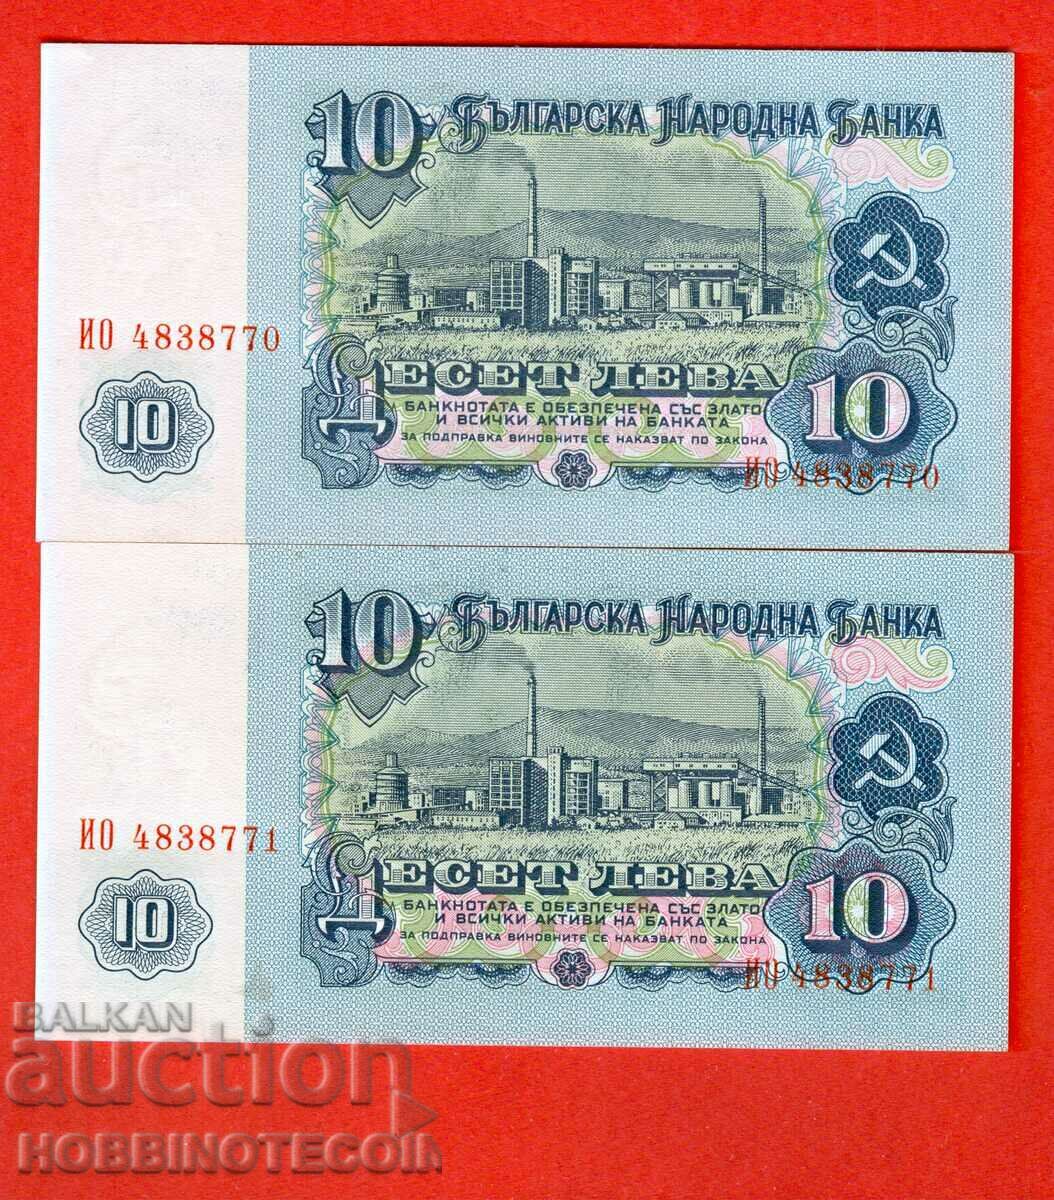 BULGARIA BULGARIA 2 x 10 Leva 7 ψηφία ΣΕΙΡΙΑΚΟΣ ΑΡΙΘΜΟΣ 1974 UNC